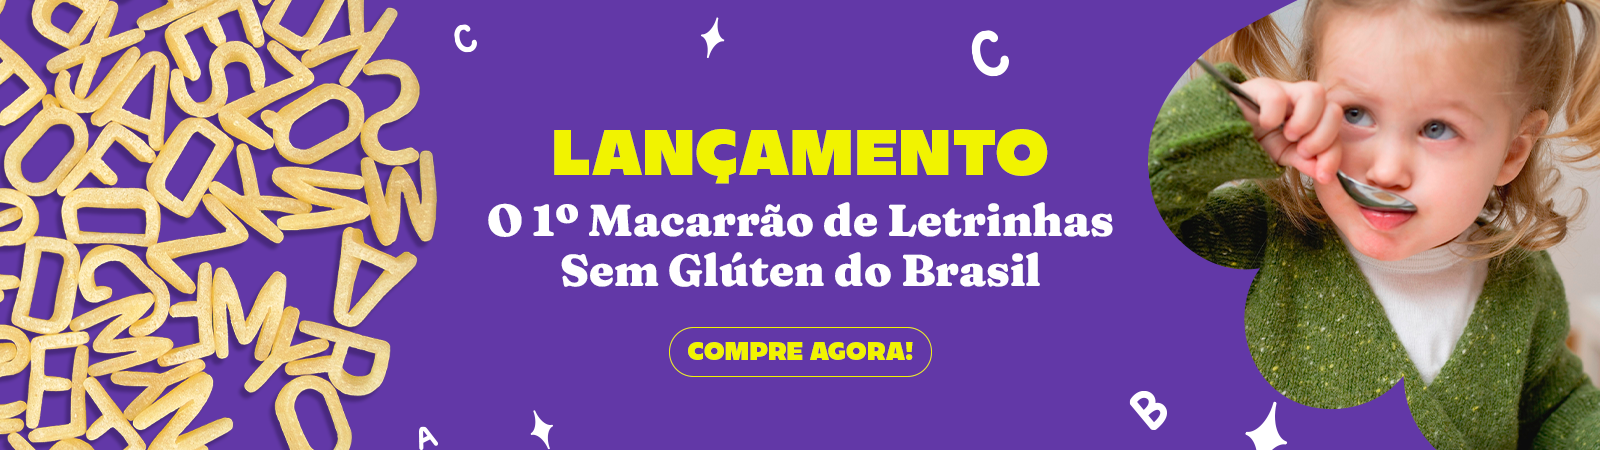 Banner ilustrativo da categoria  Quero Opções Para As Crianças 03 - Macarrão de Letrinhas